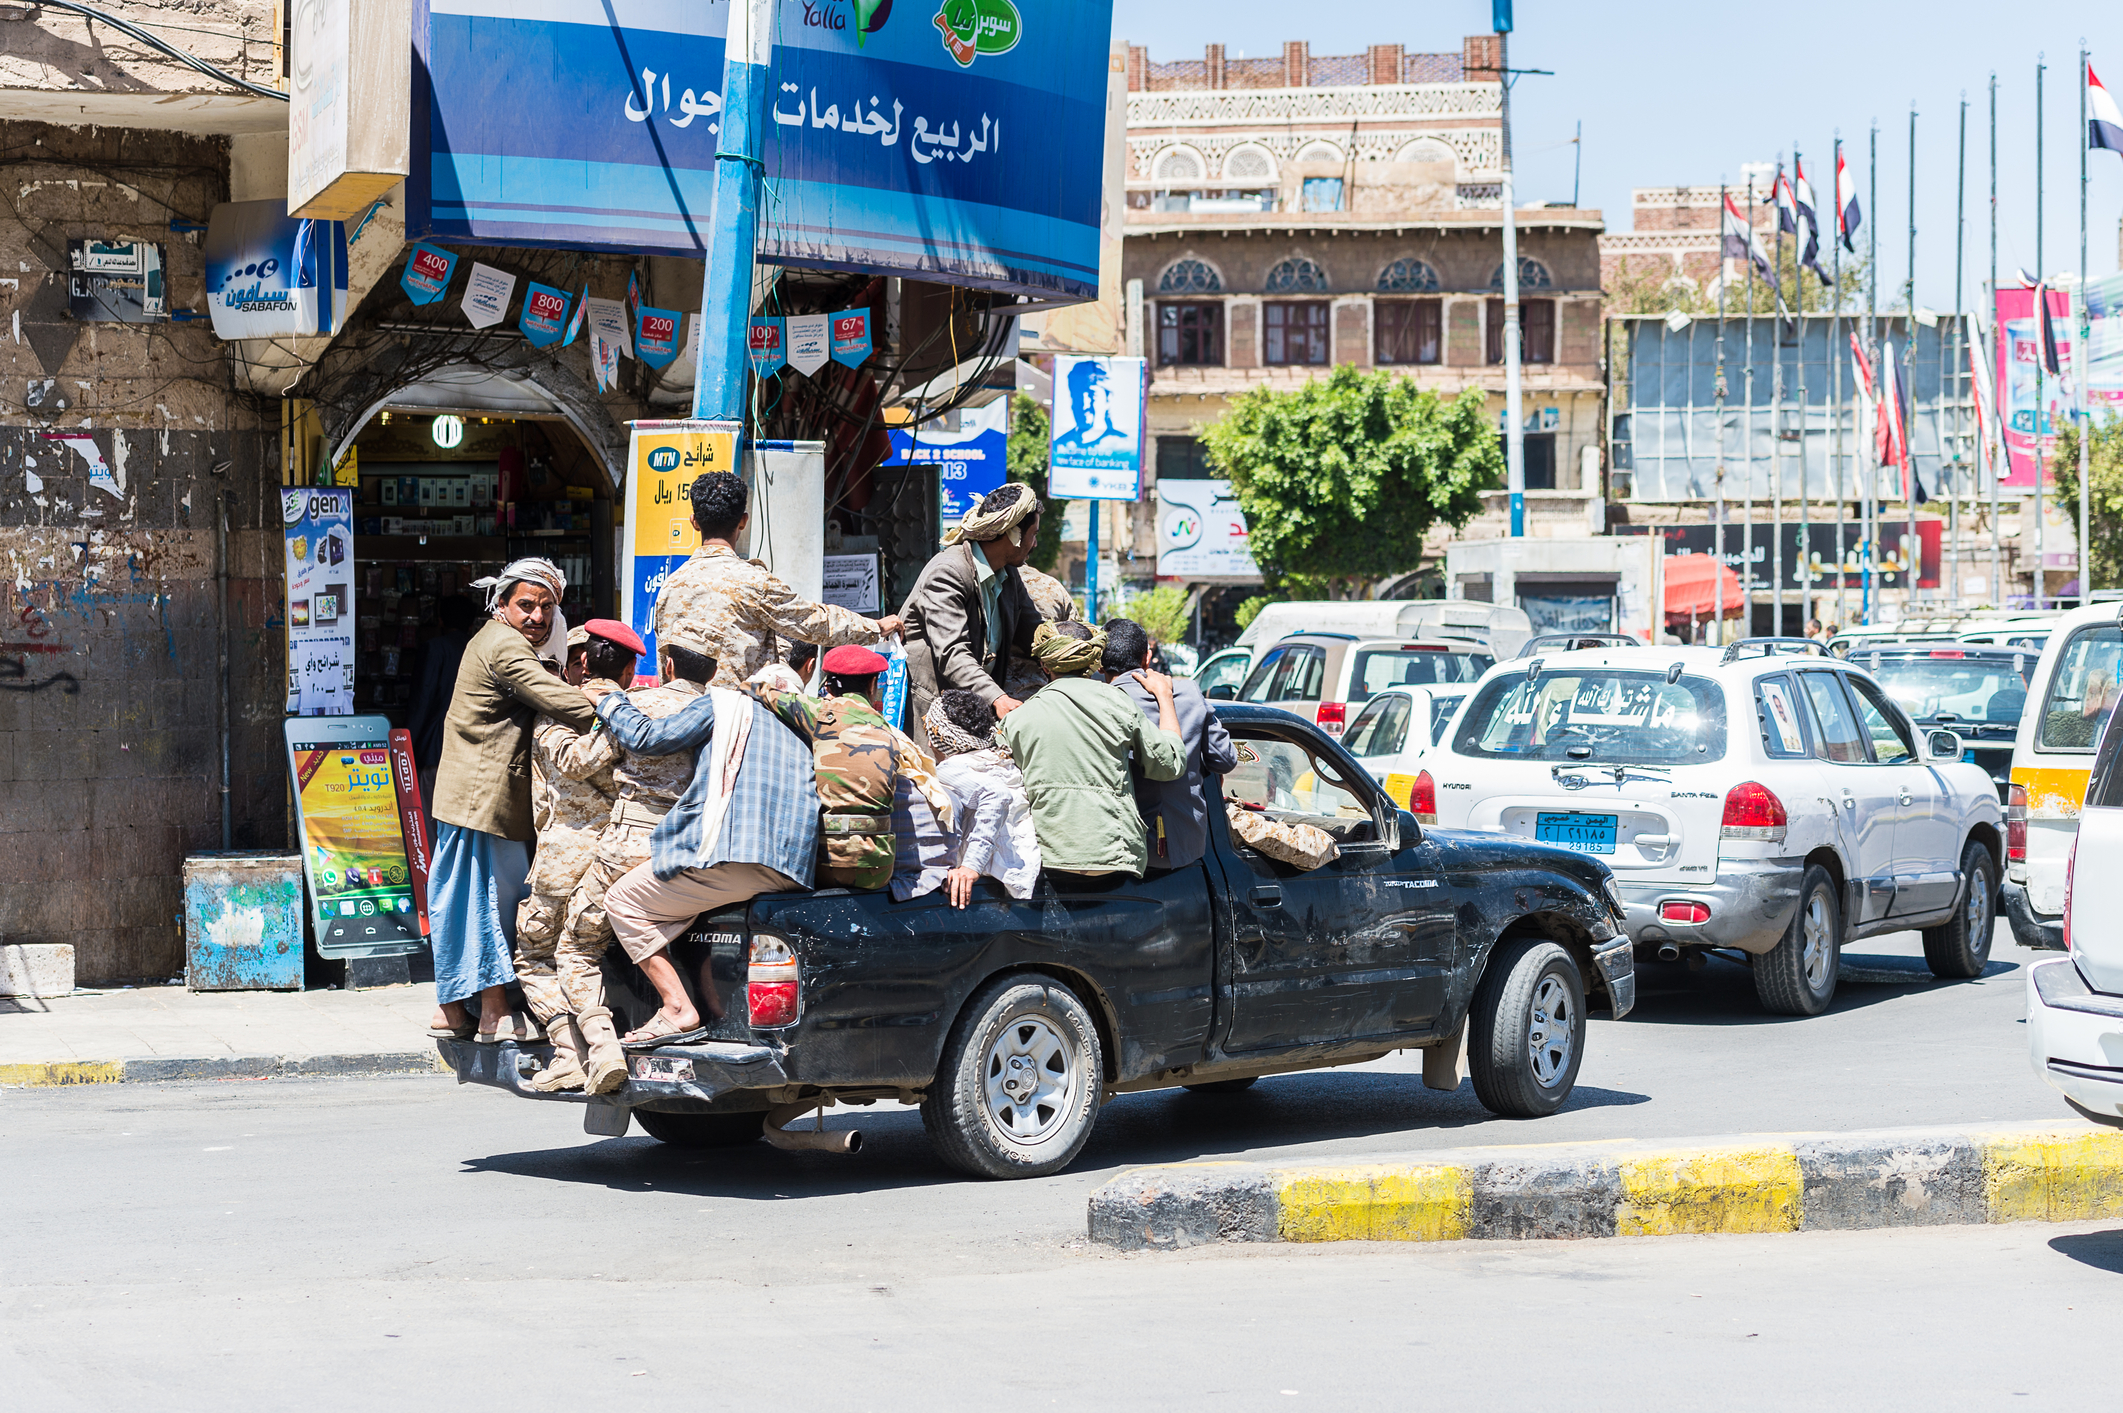 Yemeniții ce se deplasează prin oraș cu un jeep. Oamenii din Yemen suferă de sărăcie din cauza situației politice instabile și a contextului economic precar (sursă foto: dreamstime)